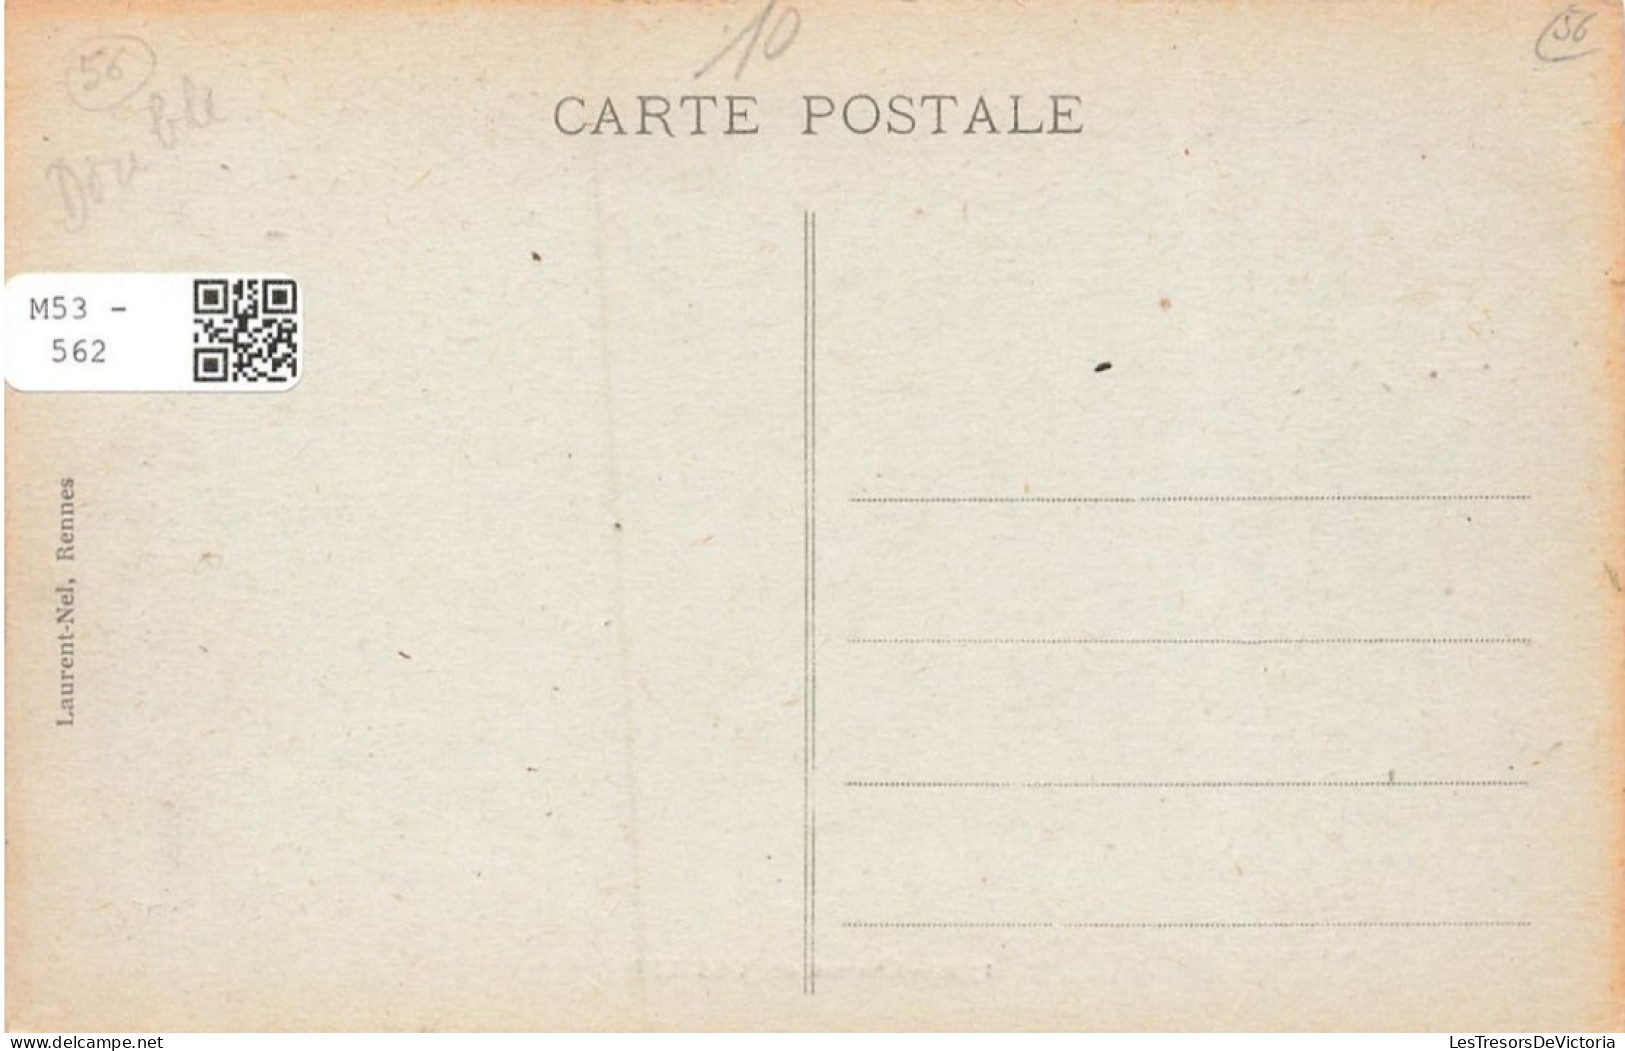 FRANCE - Château De Josselin - Vue Générale - Vue De L'extérieure - Carte Postale Ancienne - Josselin